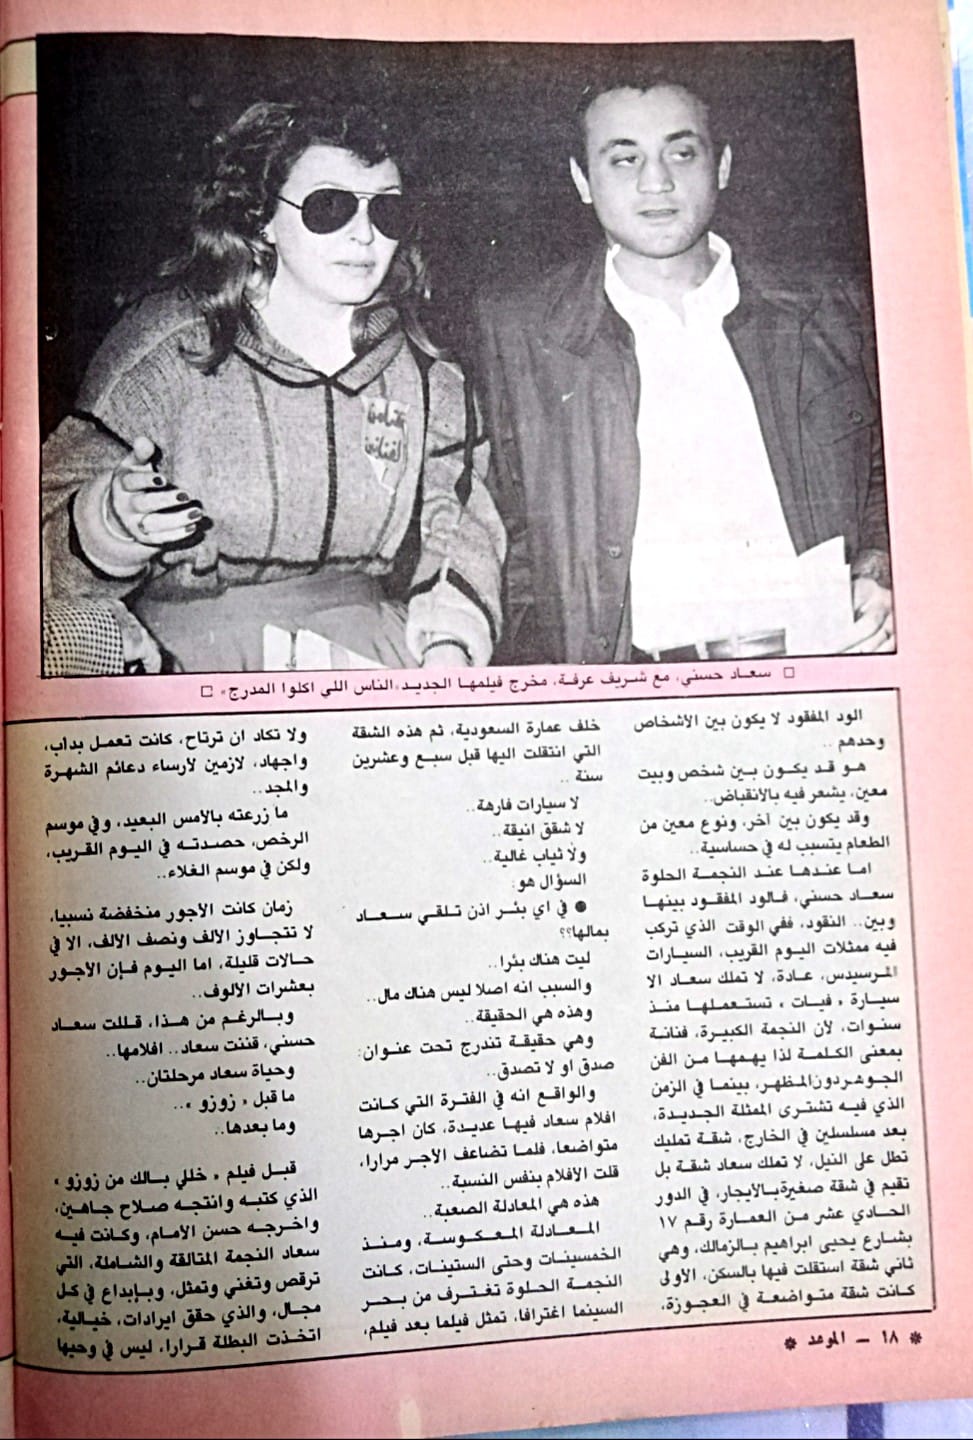 مقال صحفي : سعاد حسني .. بينها وبين الثراء ود .. مفقود ! 1988 م 313